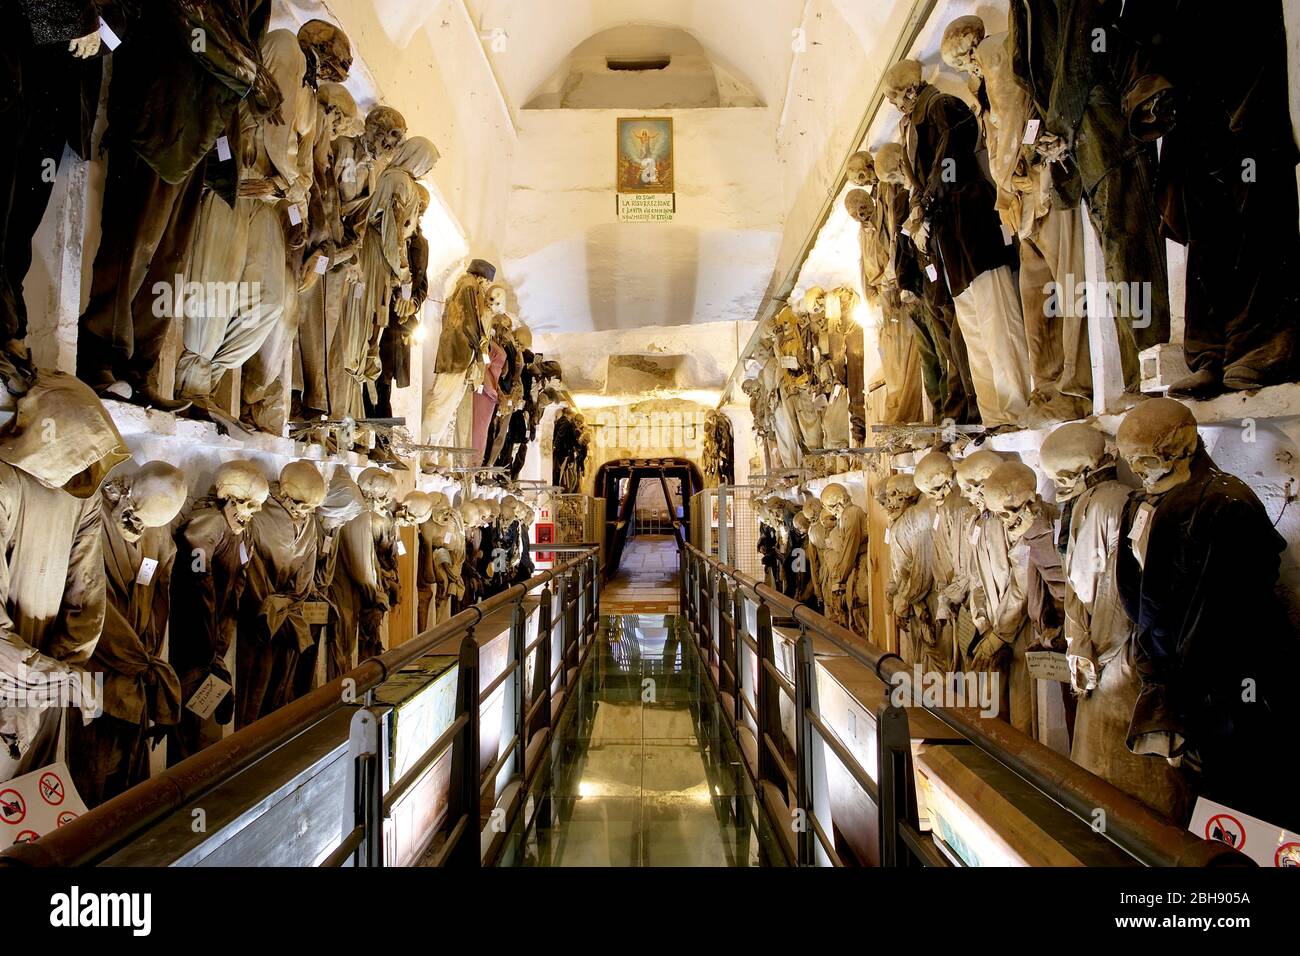 Palermo, Altstadt, Kapuzinerkloster, Grab, Mumien, Korridor voller hängender und bekleideter Mumien in zwei Etagen Stockfoto